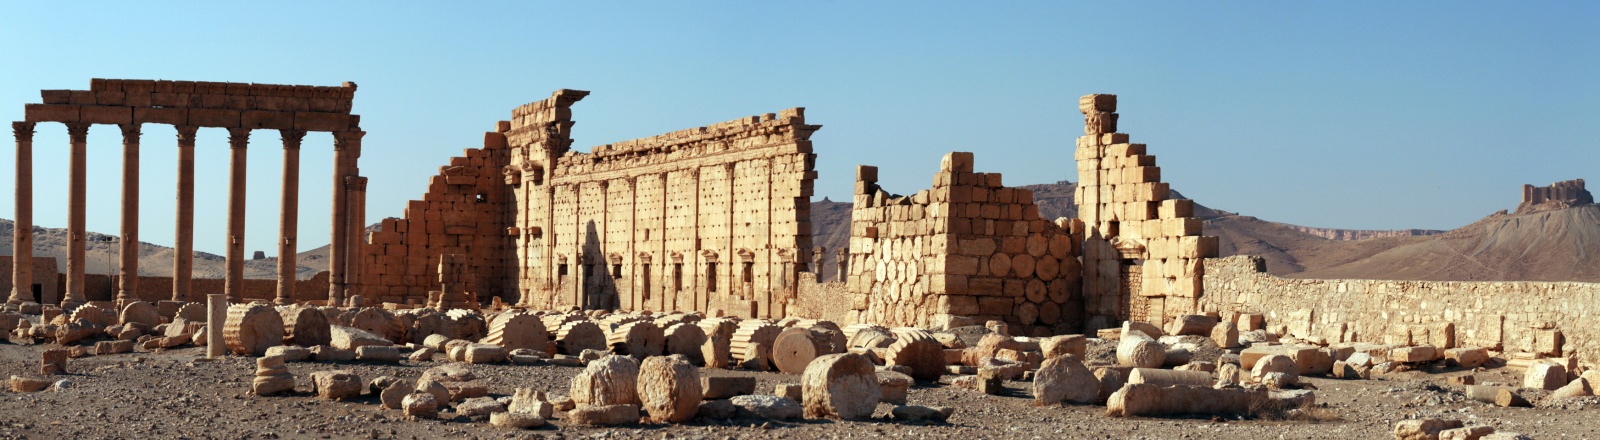 Пальмира - Сирия фото #8896